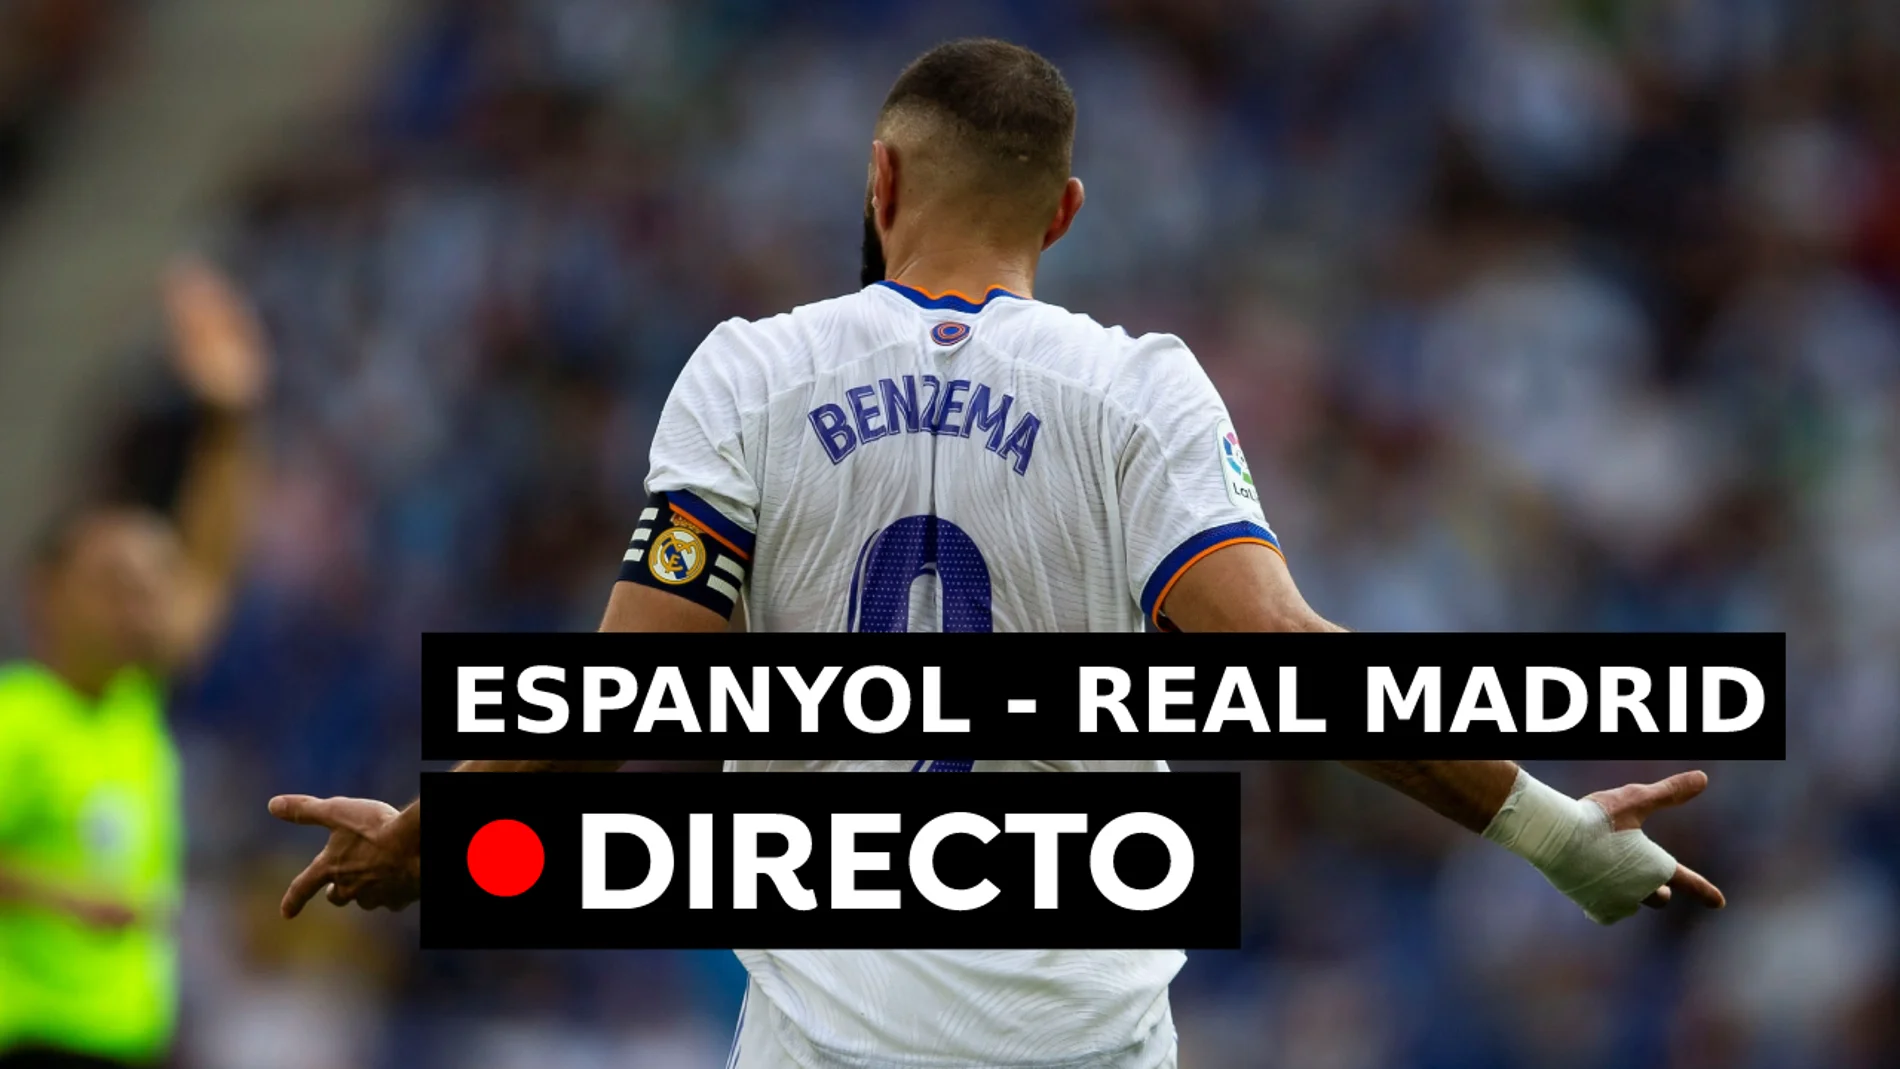 Espanyol - Real Madrid: Gol de Benzema, en directo (2-1)